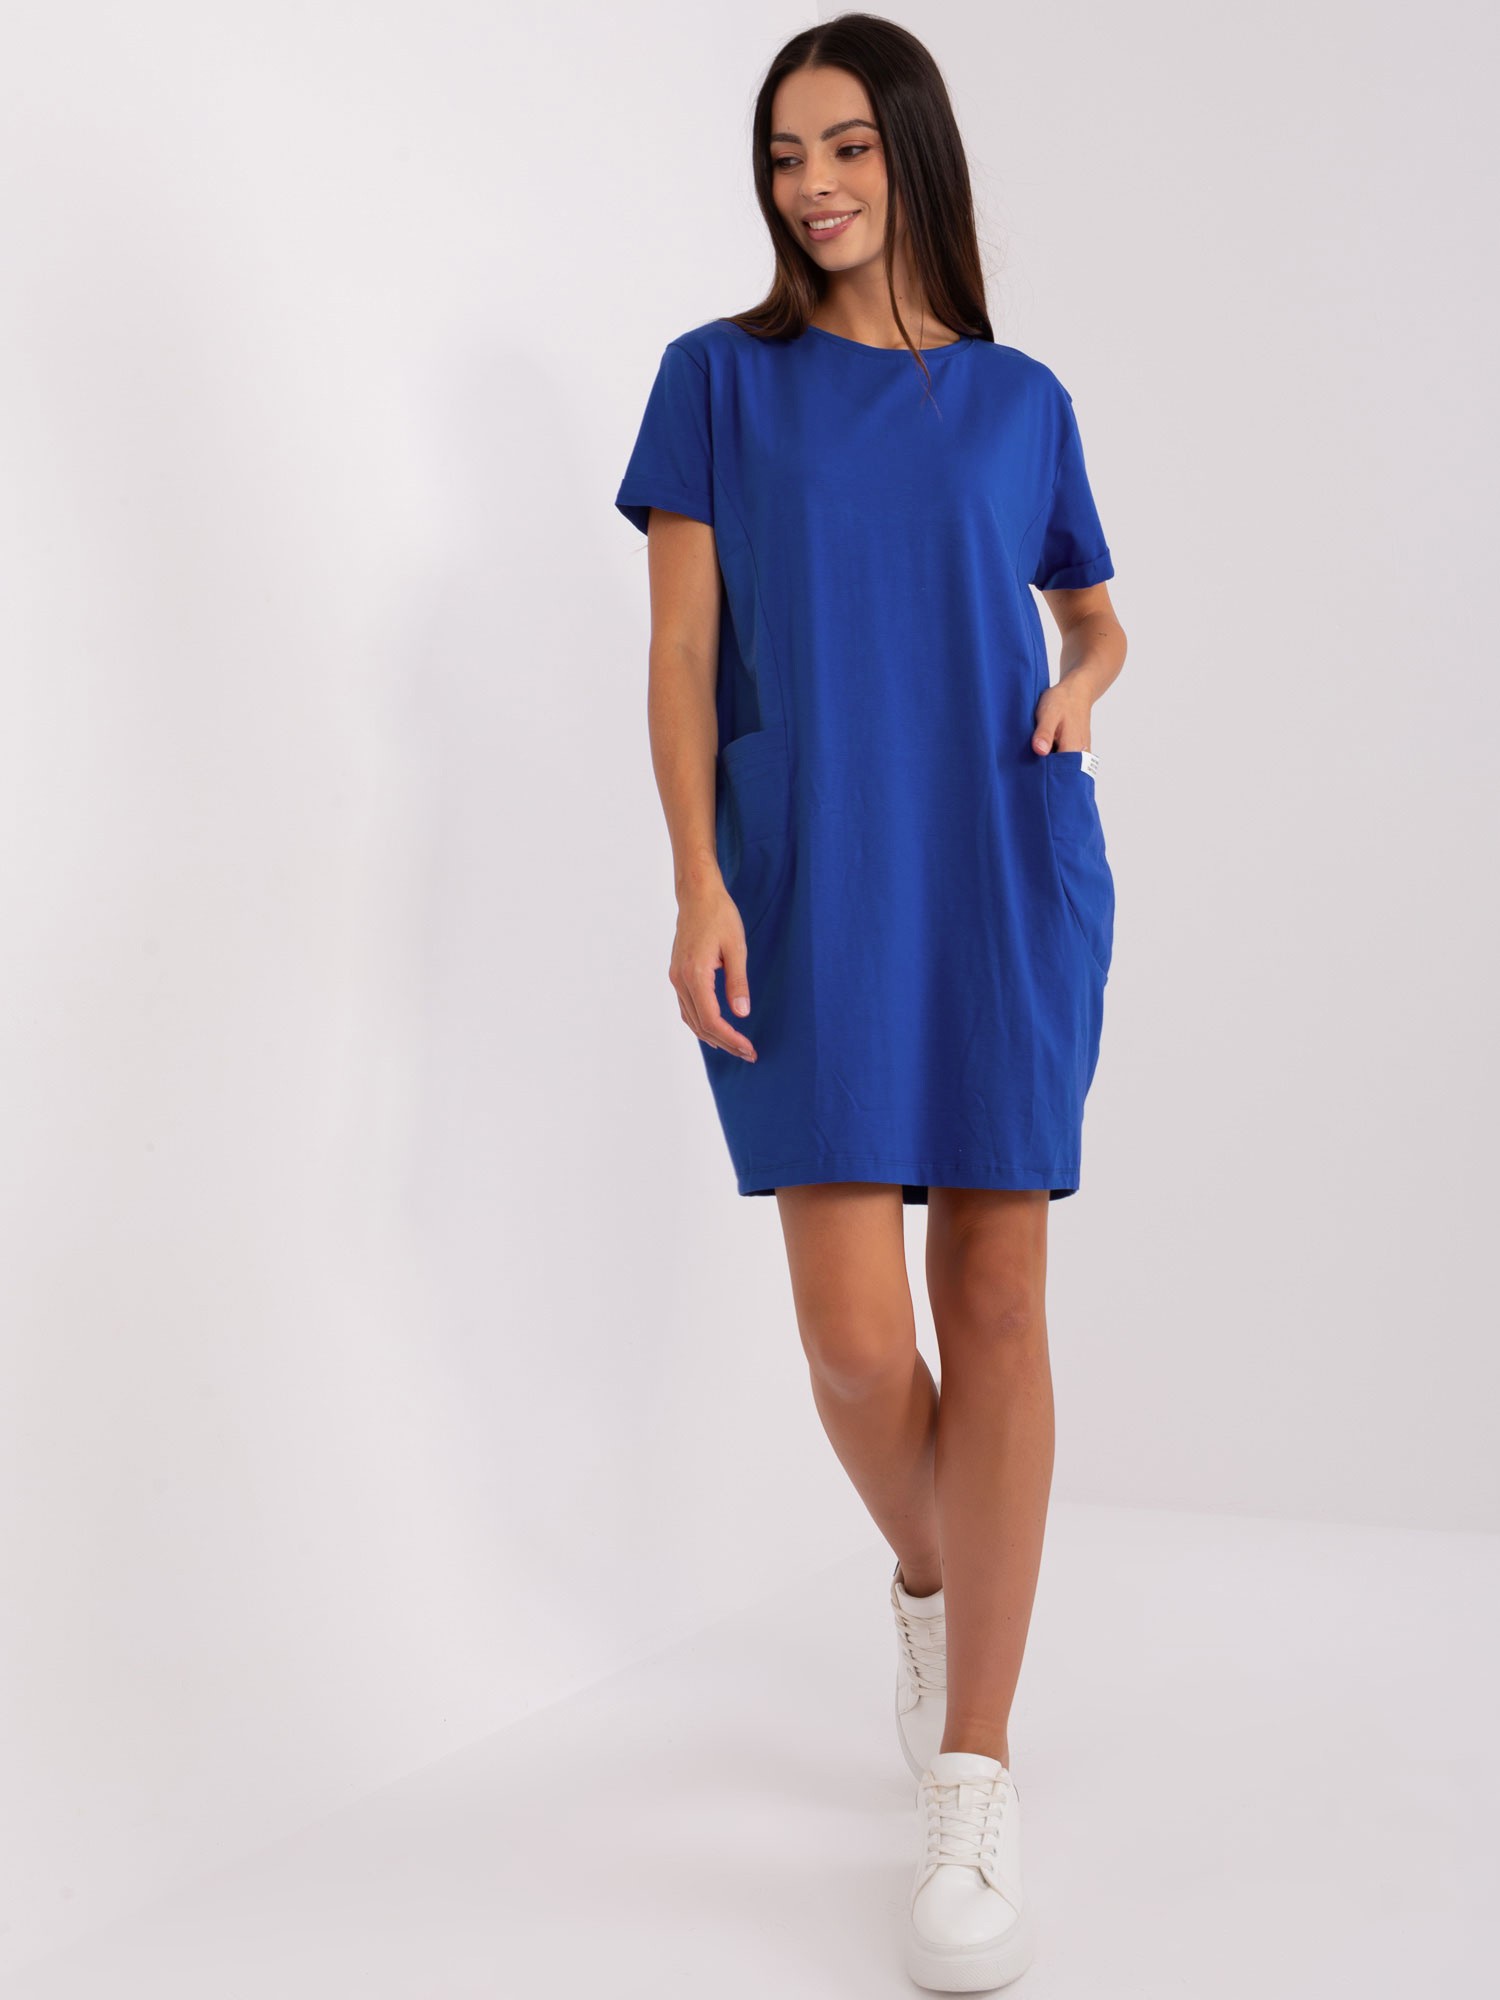 Modré šaty s kapsami RV-SK-8724.12-kobalt Velikost: S/M